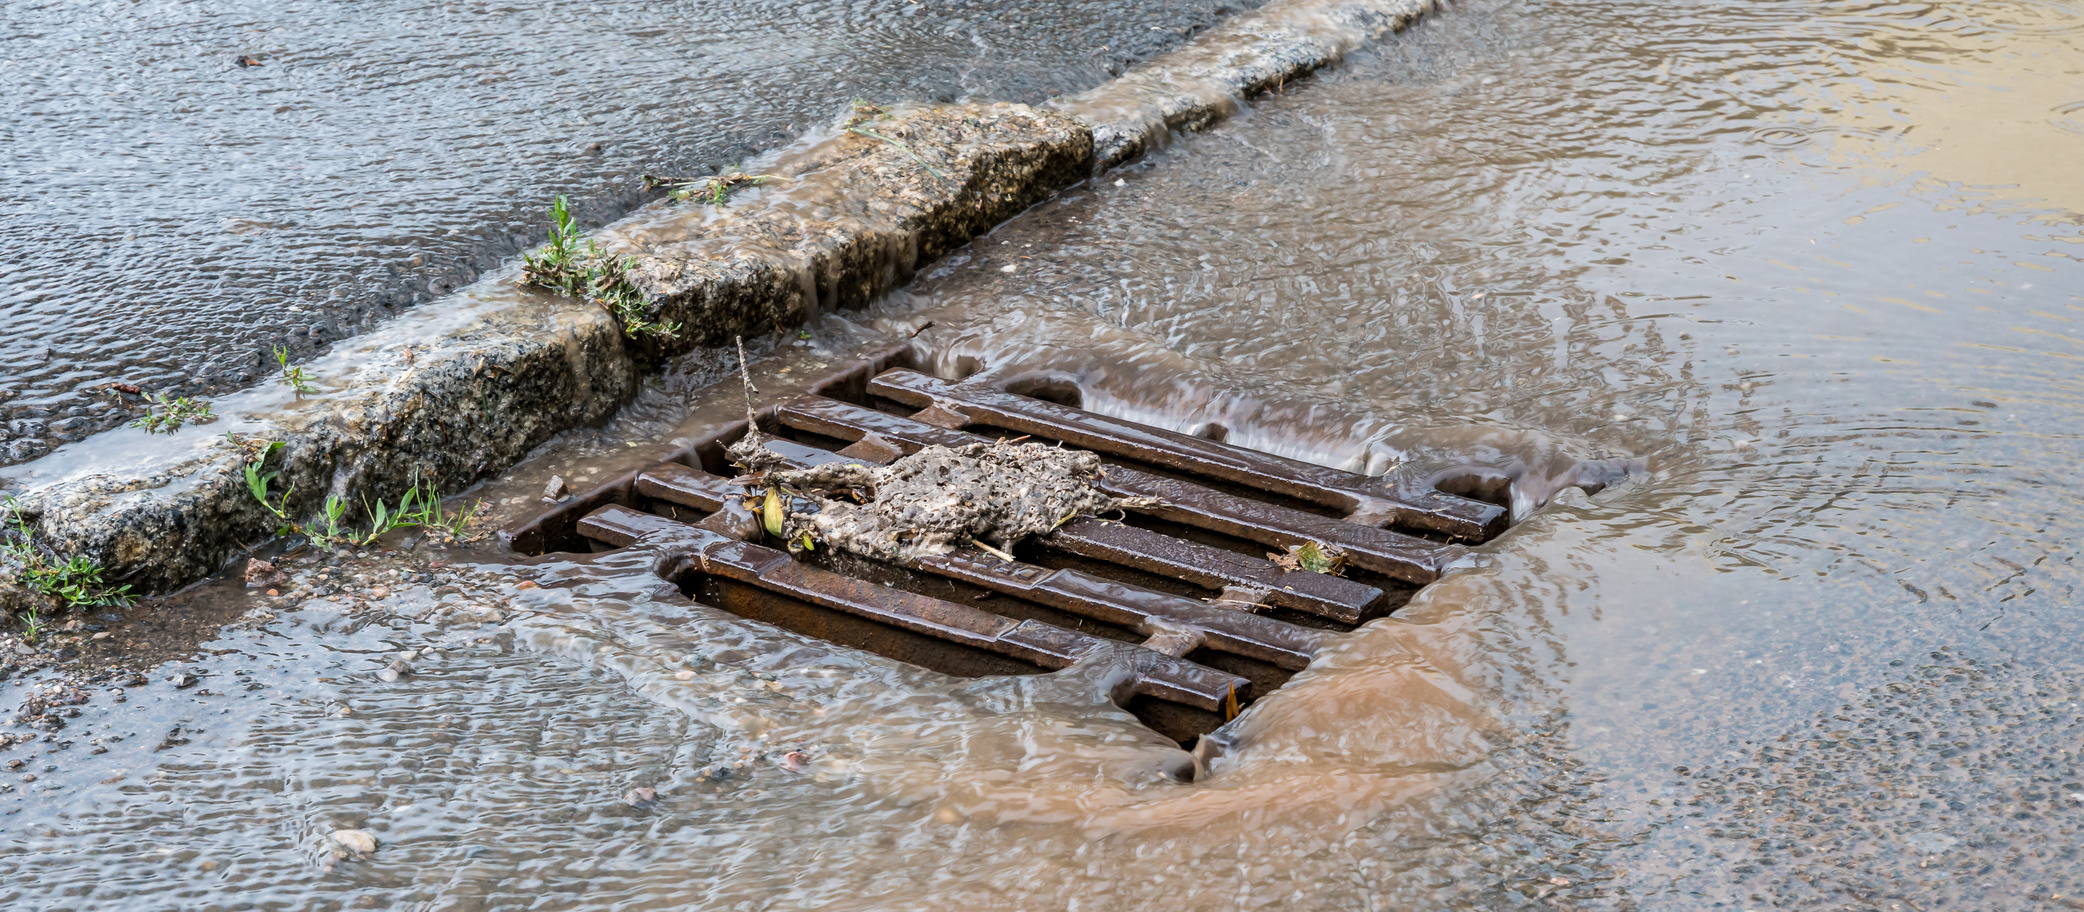 UBA sieht Potential zur Kühlung von Städten durch Niederschlagswasser